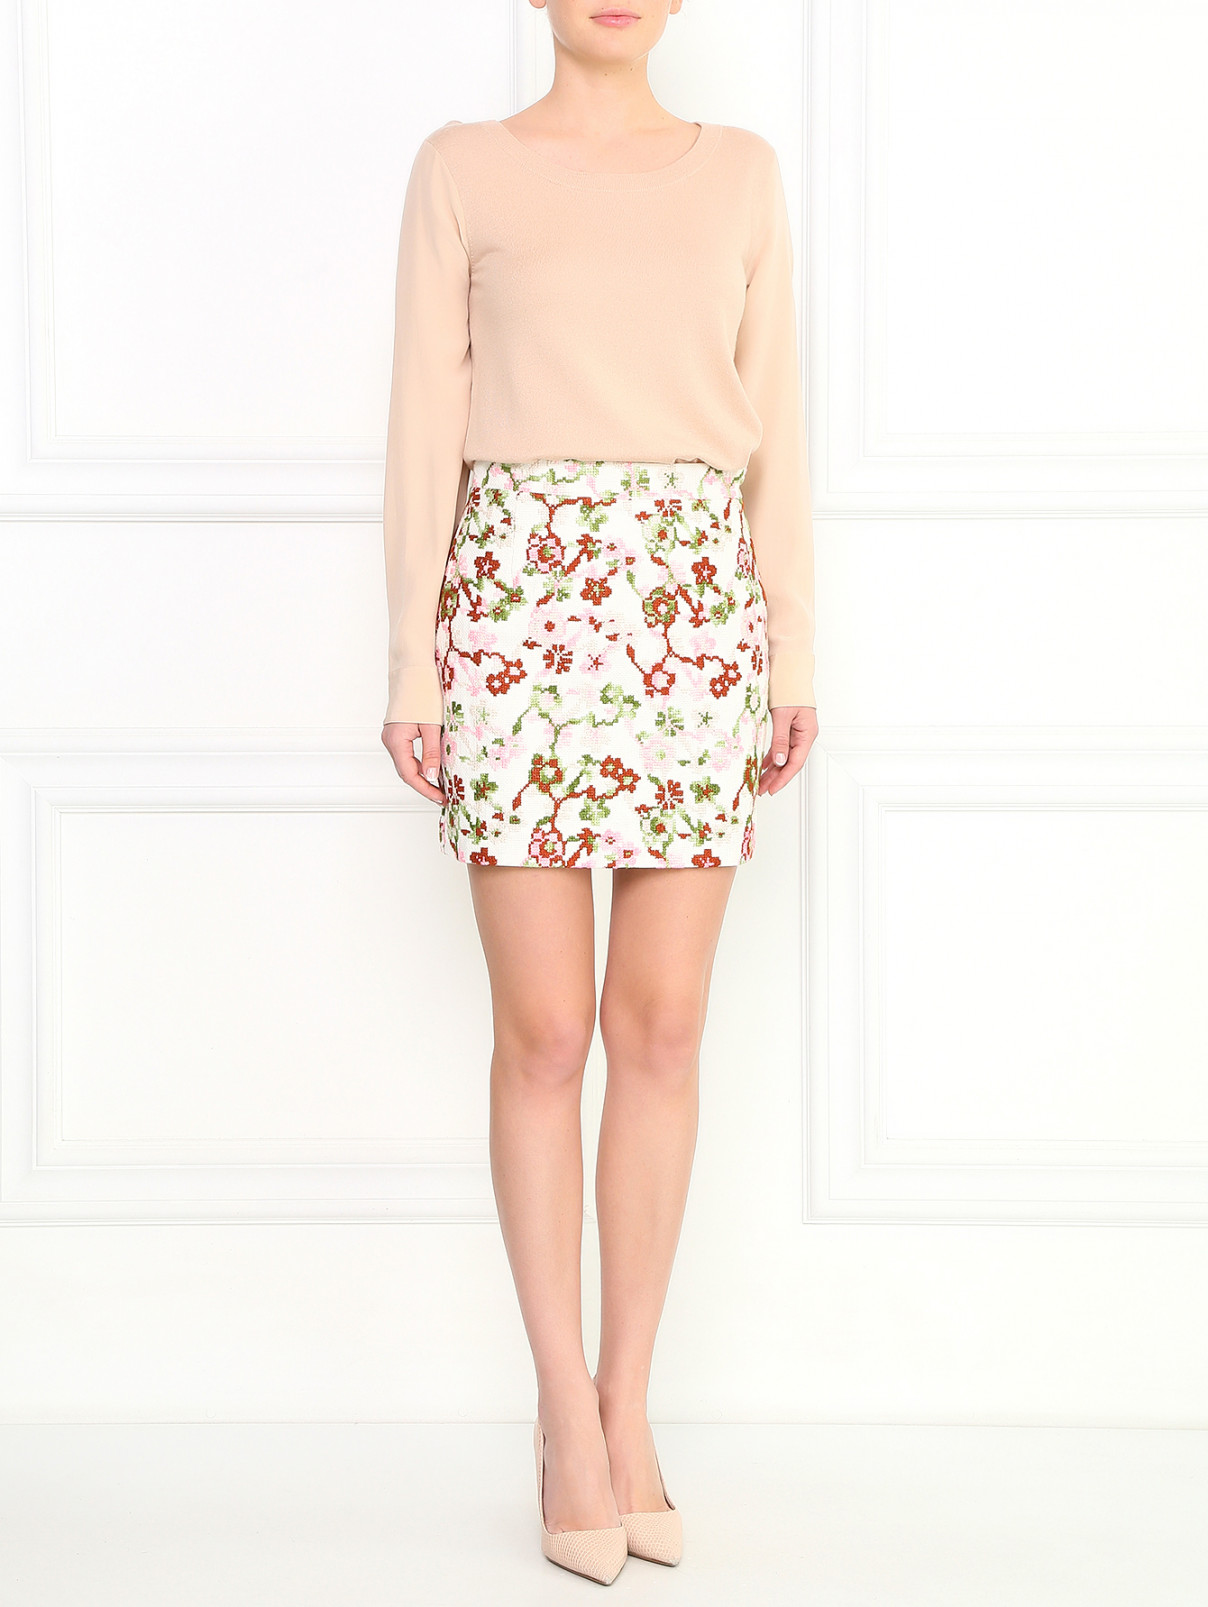 Мини юбка-трапеция с вышивкой Sage and Ivy  –  Модель Общий вид  – Цвет:  Узор